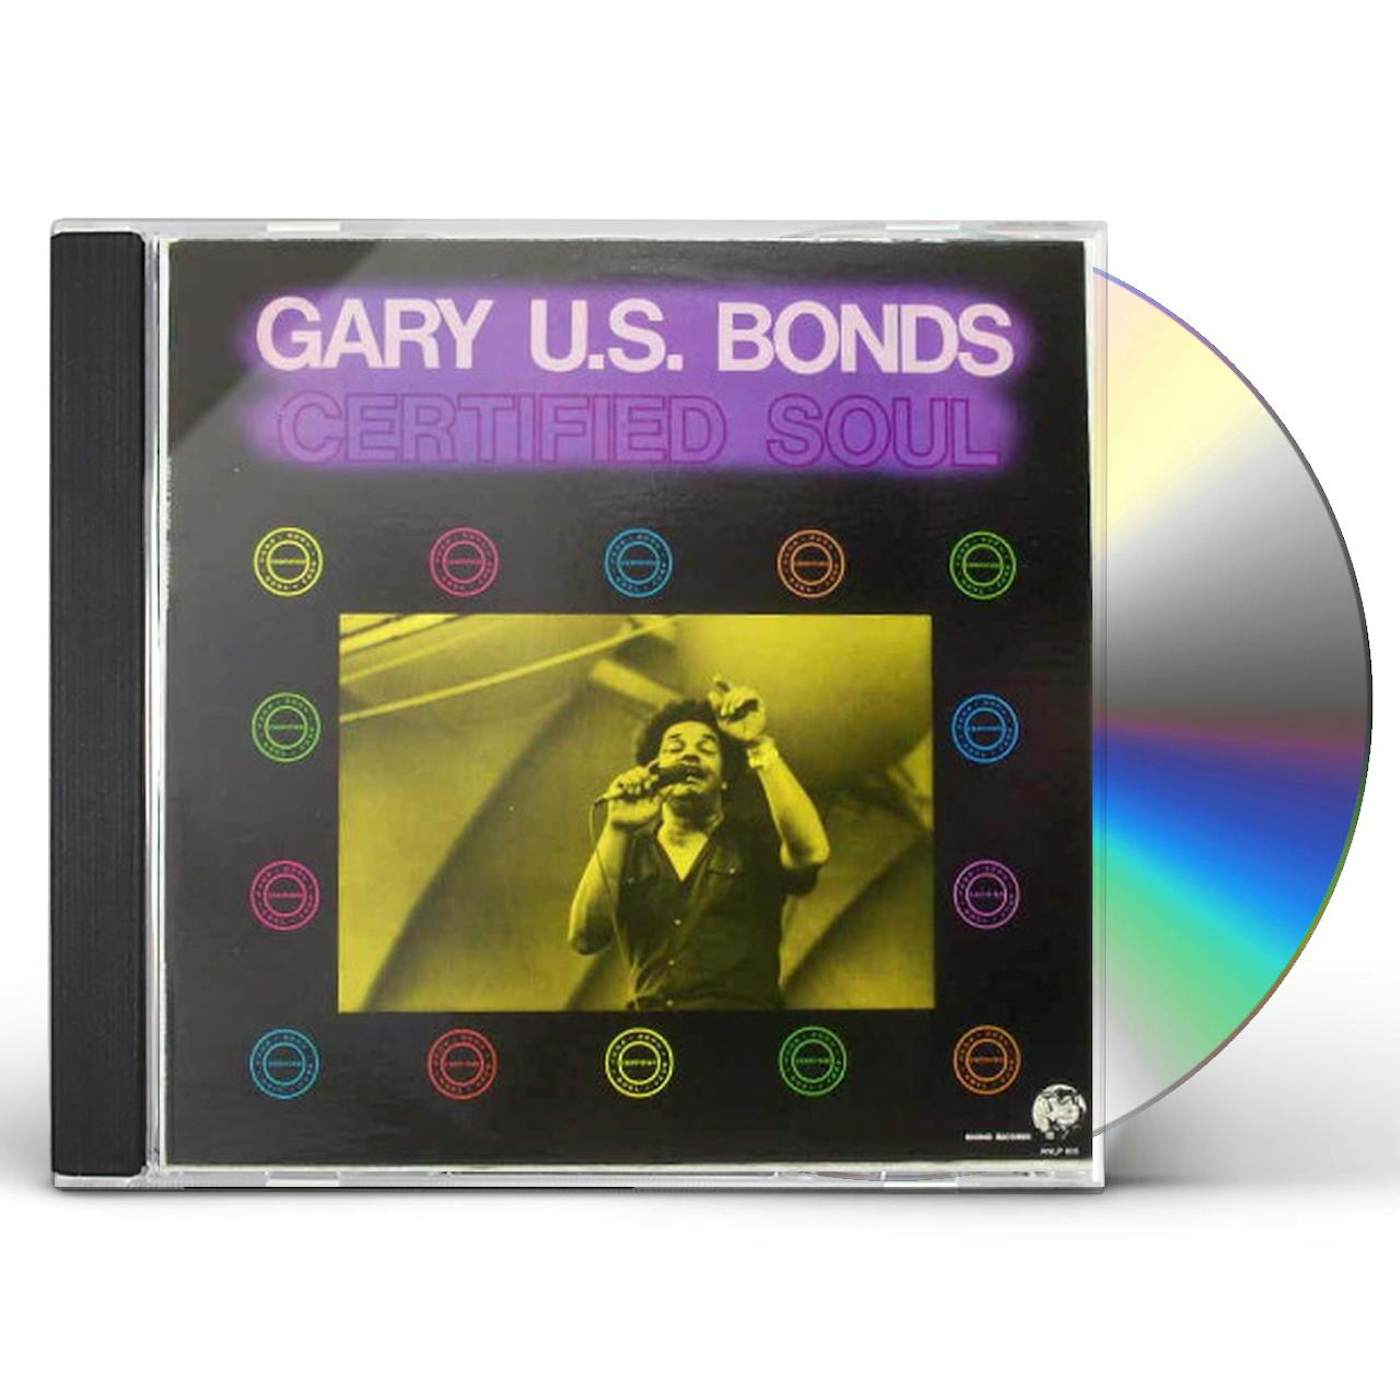 Gary U.S. Bonds CERTIFIED SOUL CD